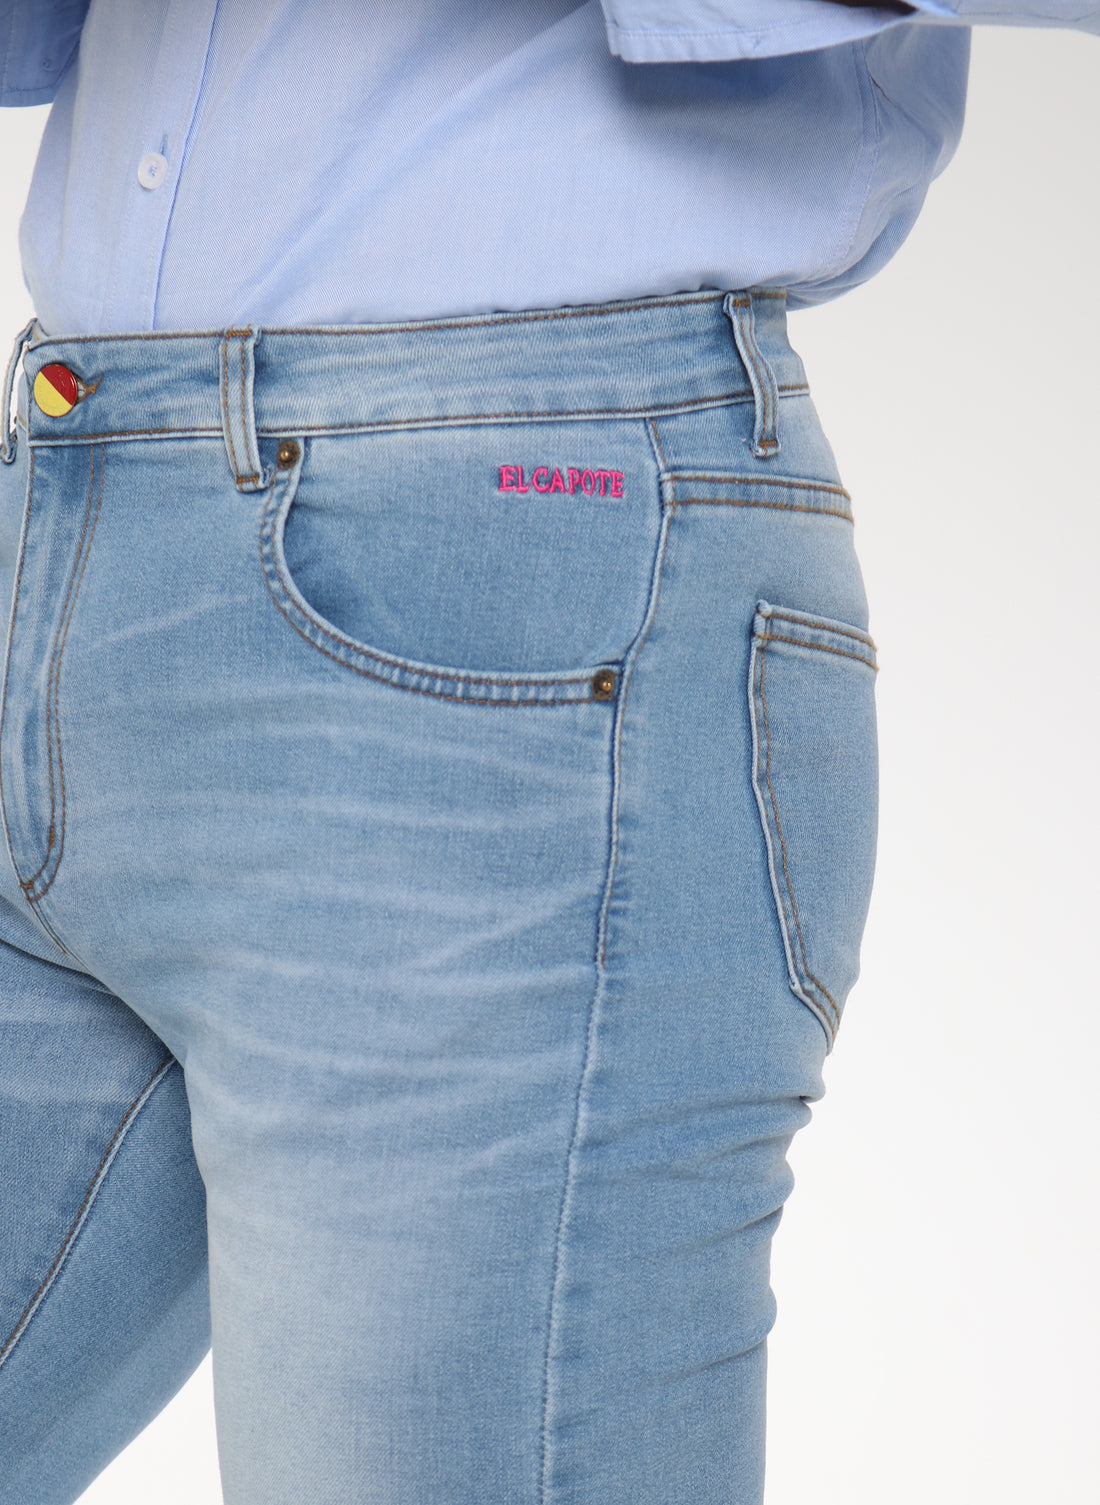 Jeanshose mit Laser-Logo für Herren